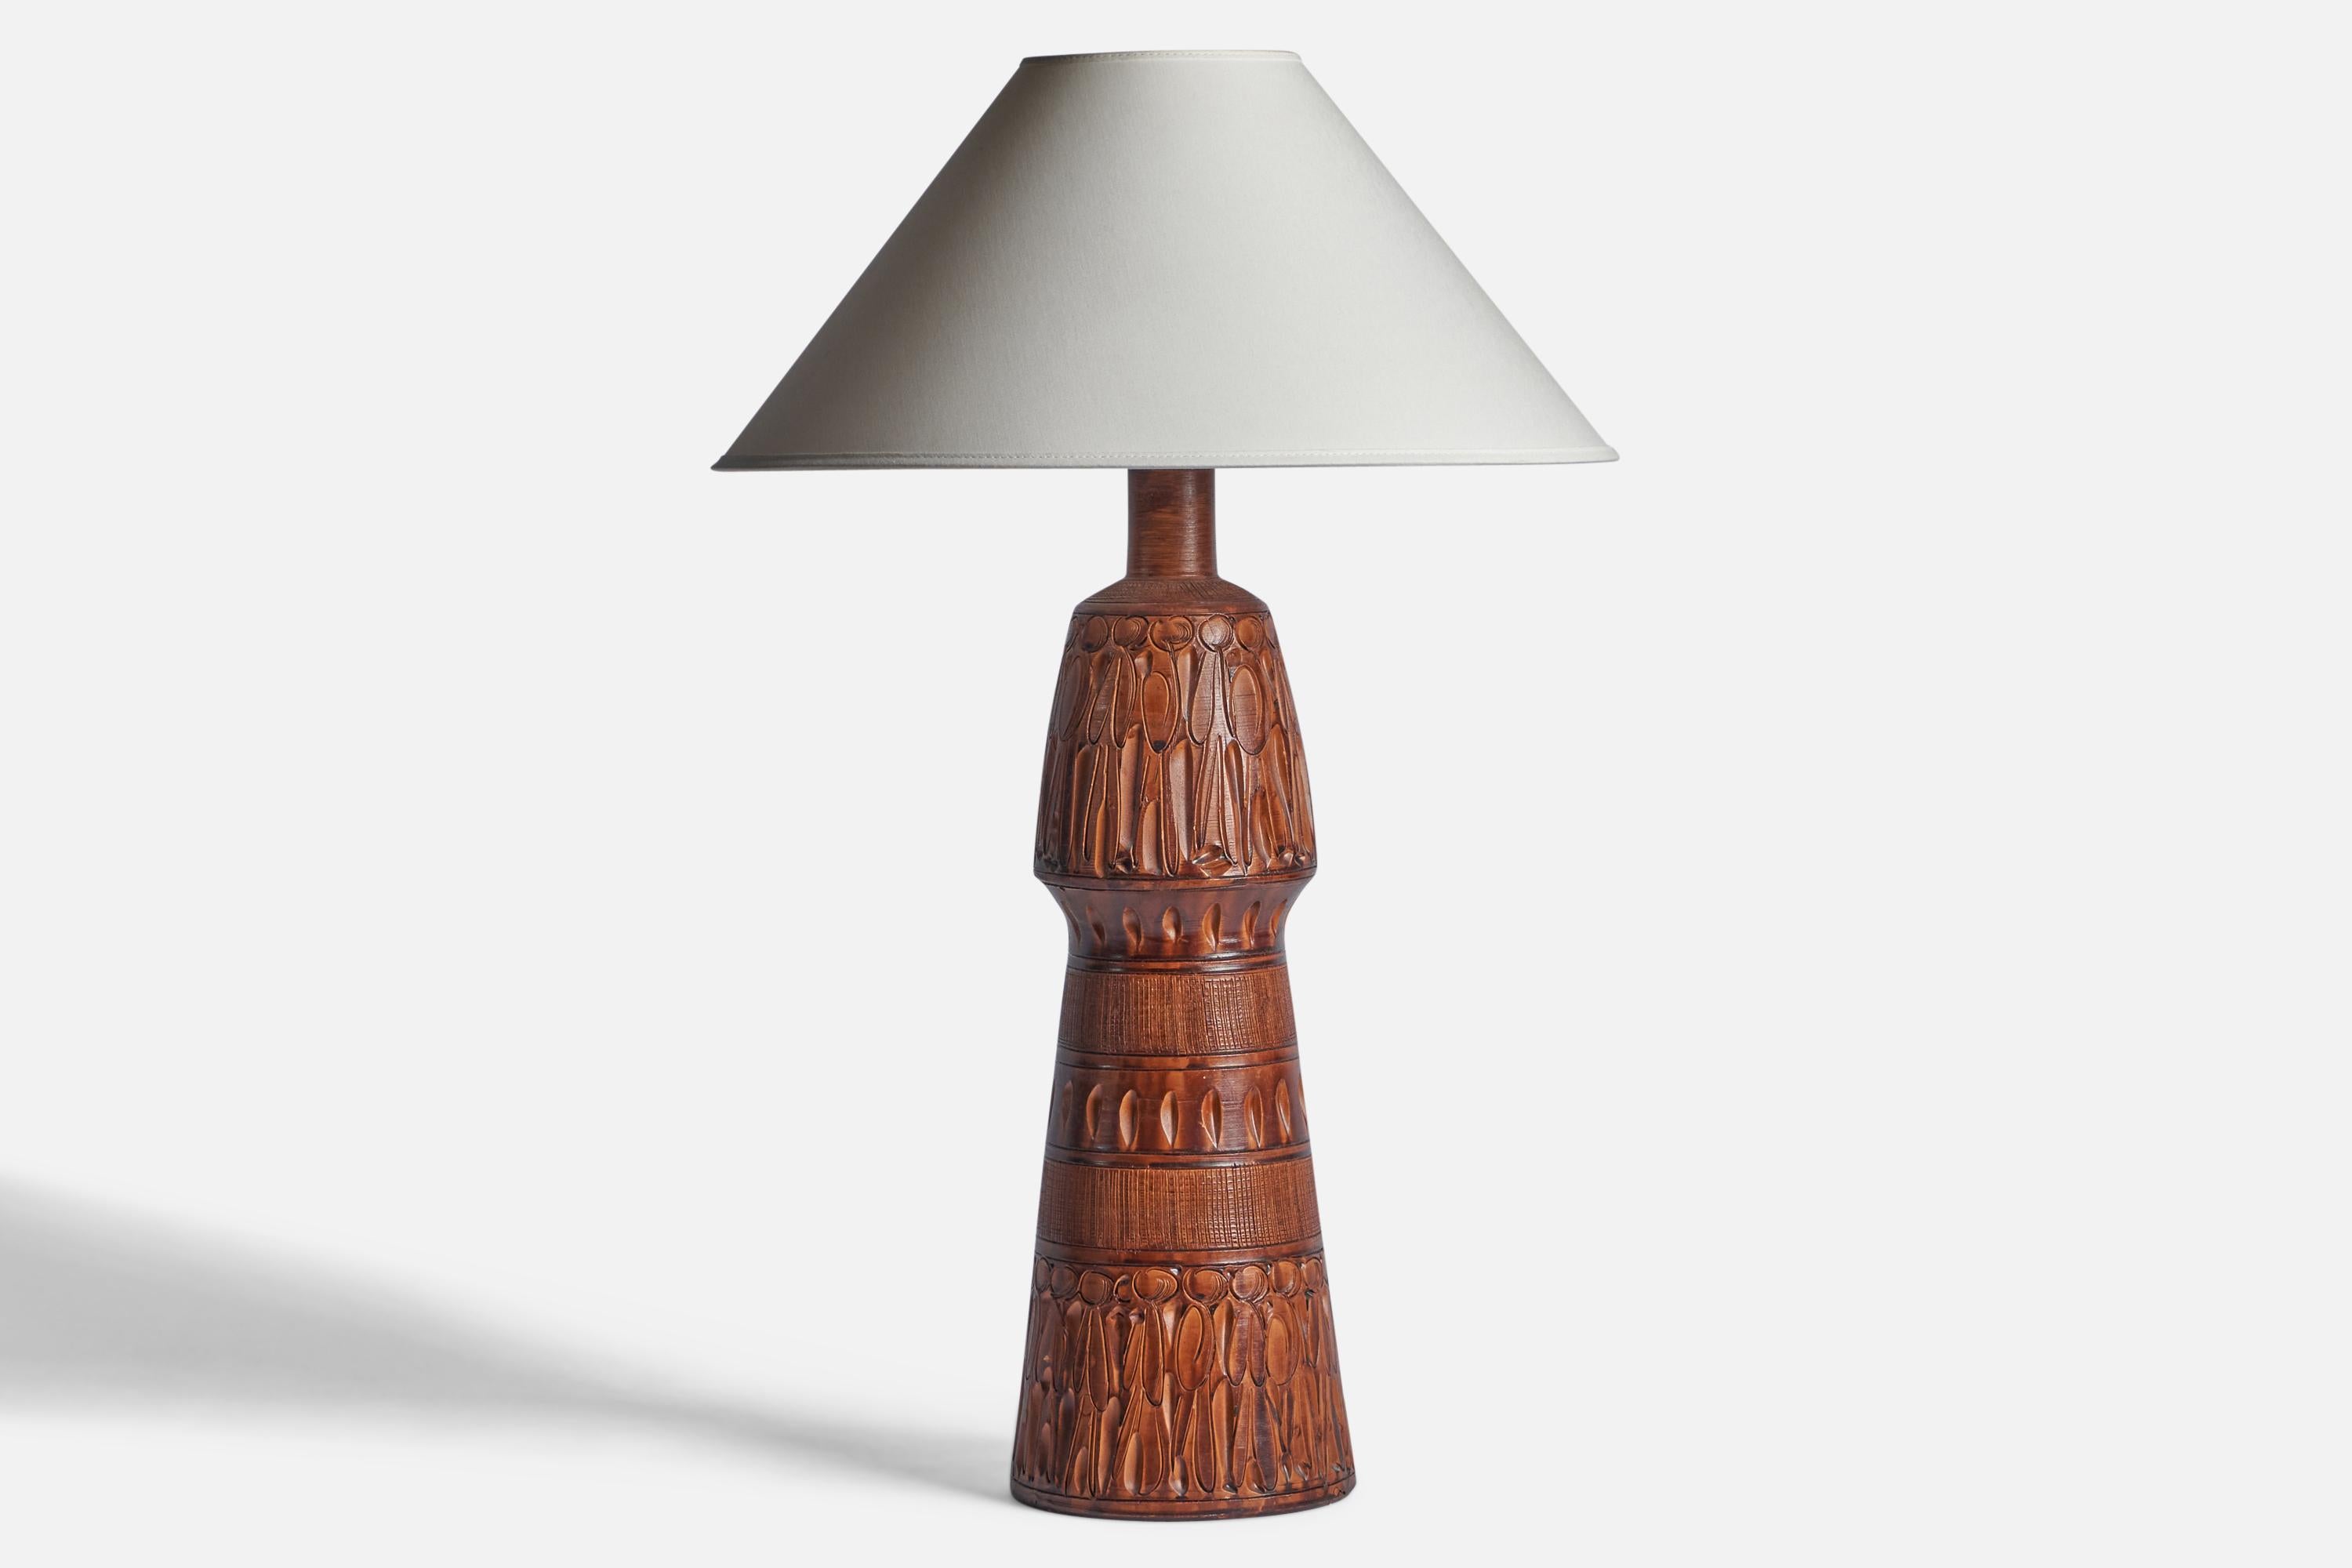 Große Tischlampe aus braun glasierter und geritzter Keramik, entworfen und hergestellt in Italien, ca. 1960er Jahre.

Abmessungen der Lampe (Zoll): 21